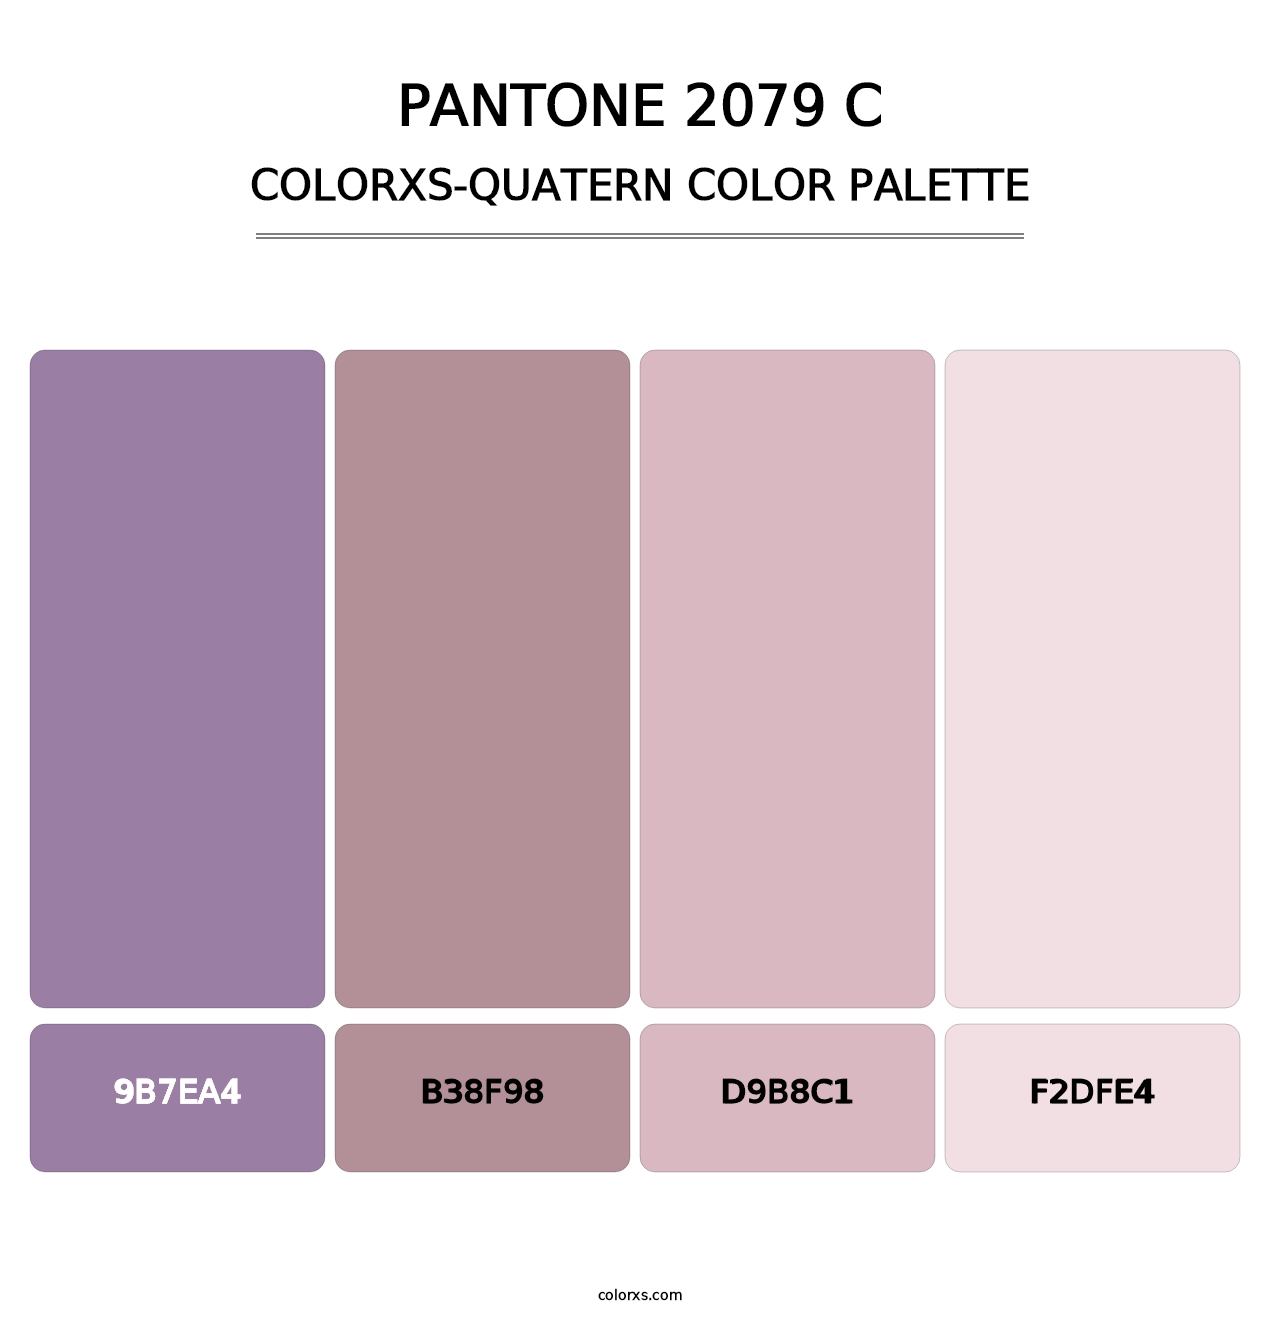 PANTONE 2079 C - Colorxs Quatern Palette